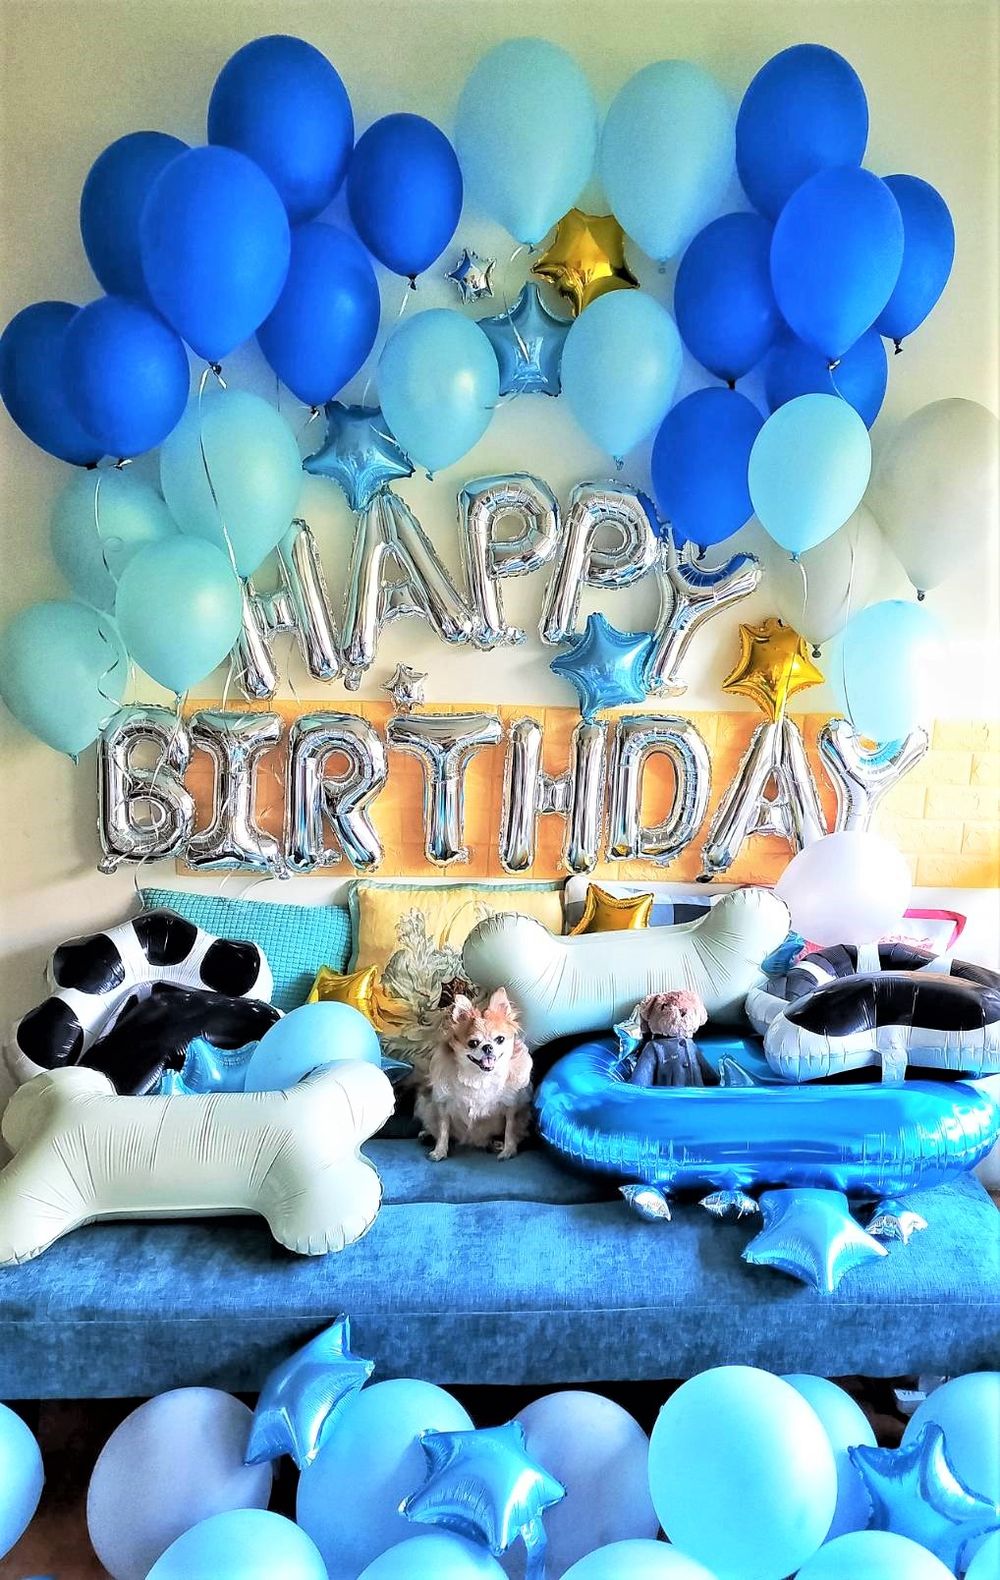 【節慶氣球裝置藝術布置】狗狗生日派對氣球「動森主題」套裝組合 KNJ氣球商城 吃貨旅遊作家水靜葳 (13)